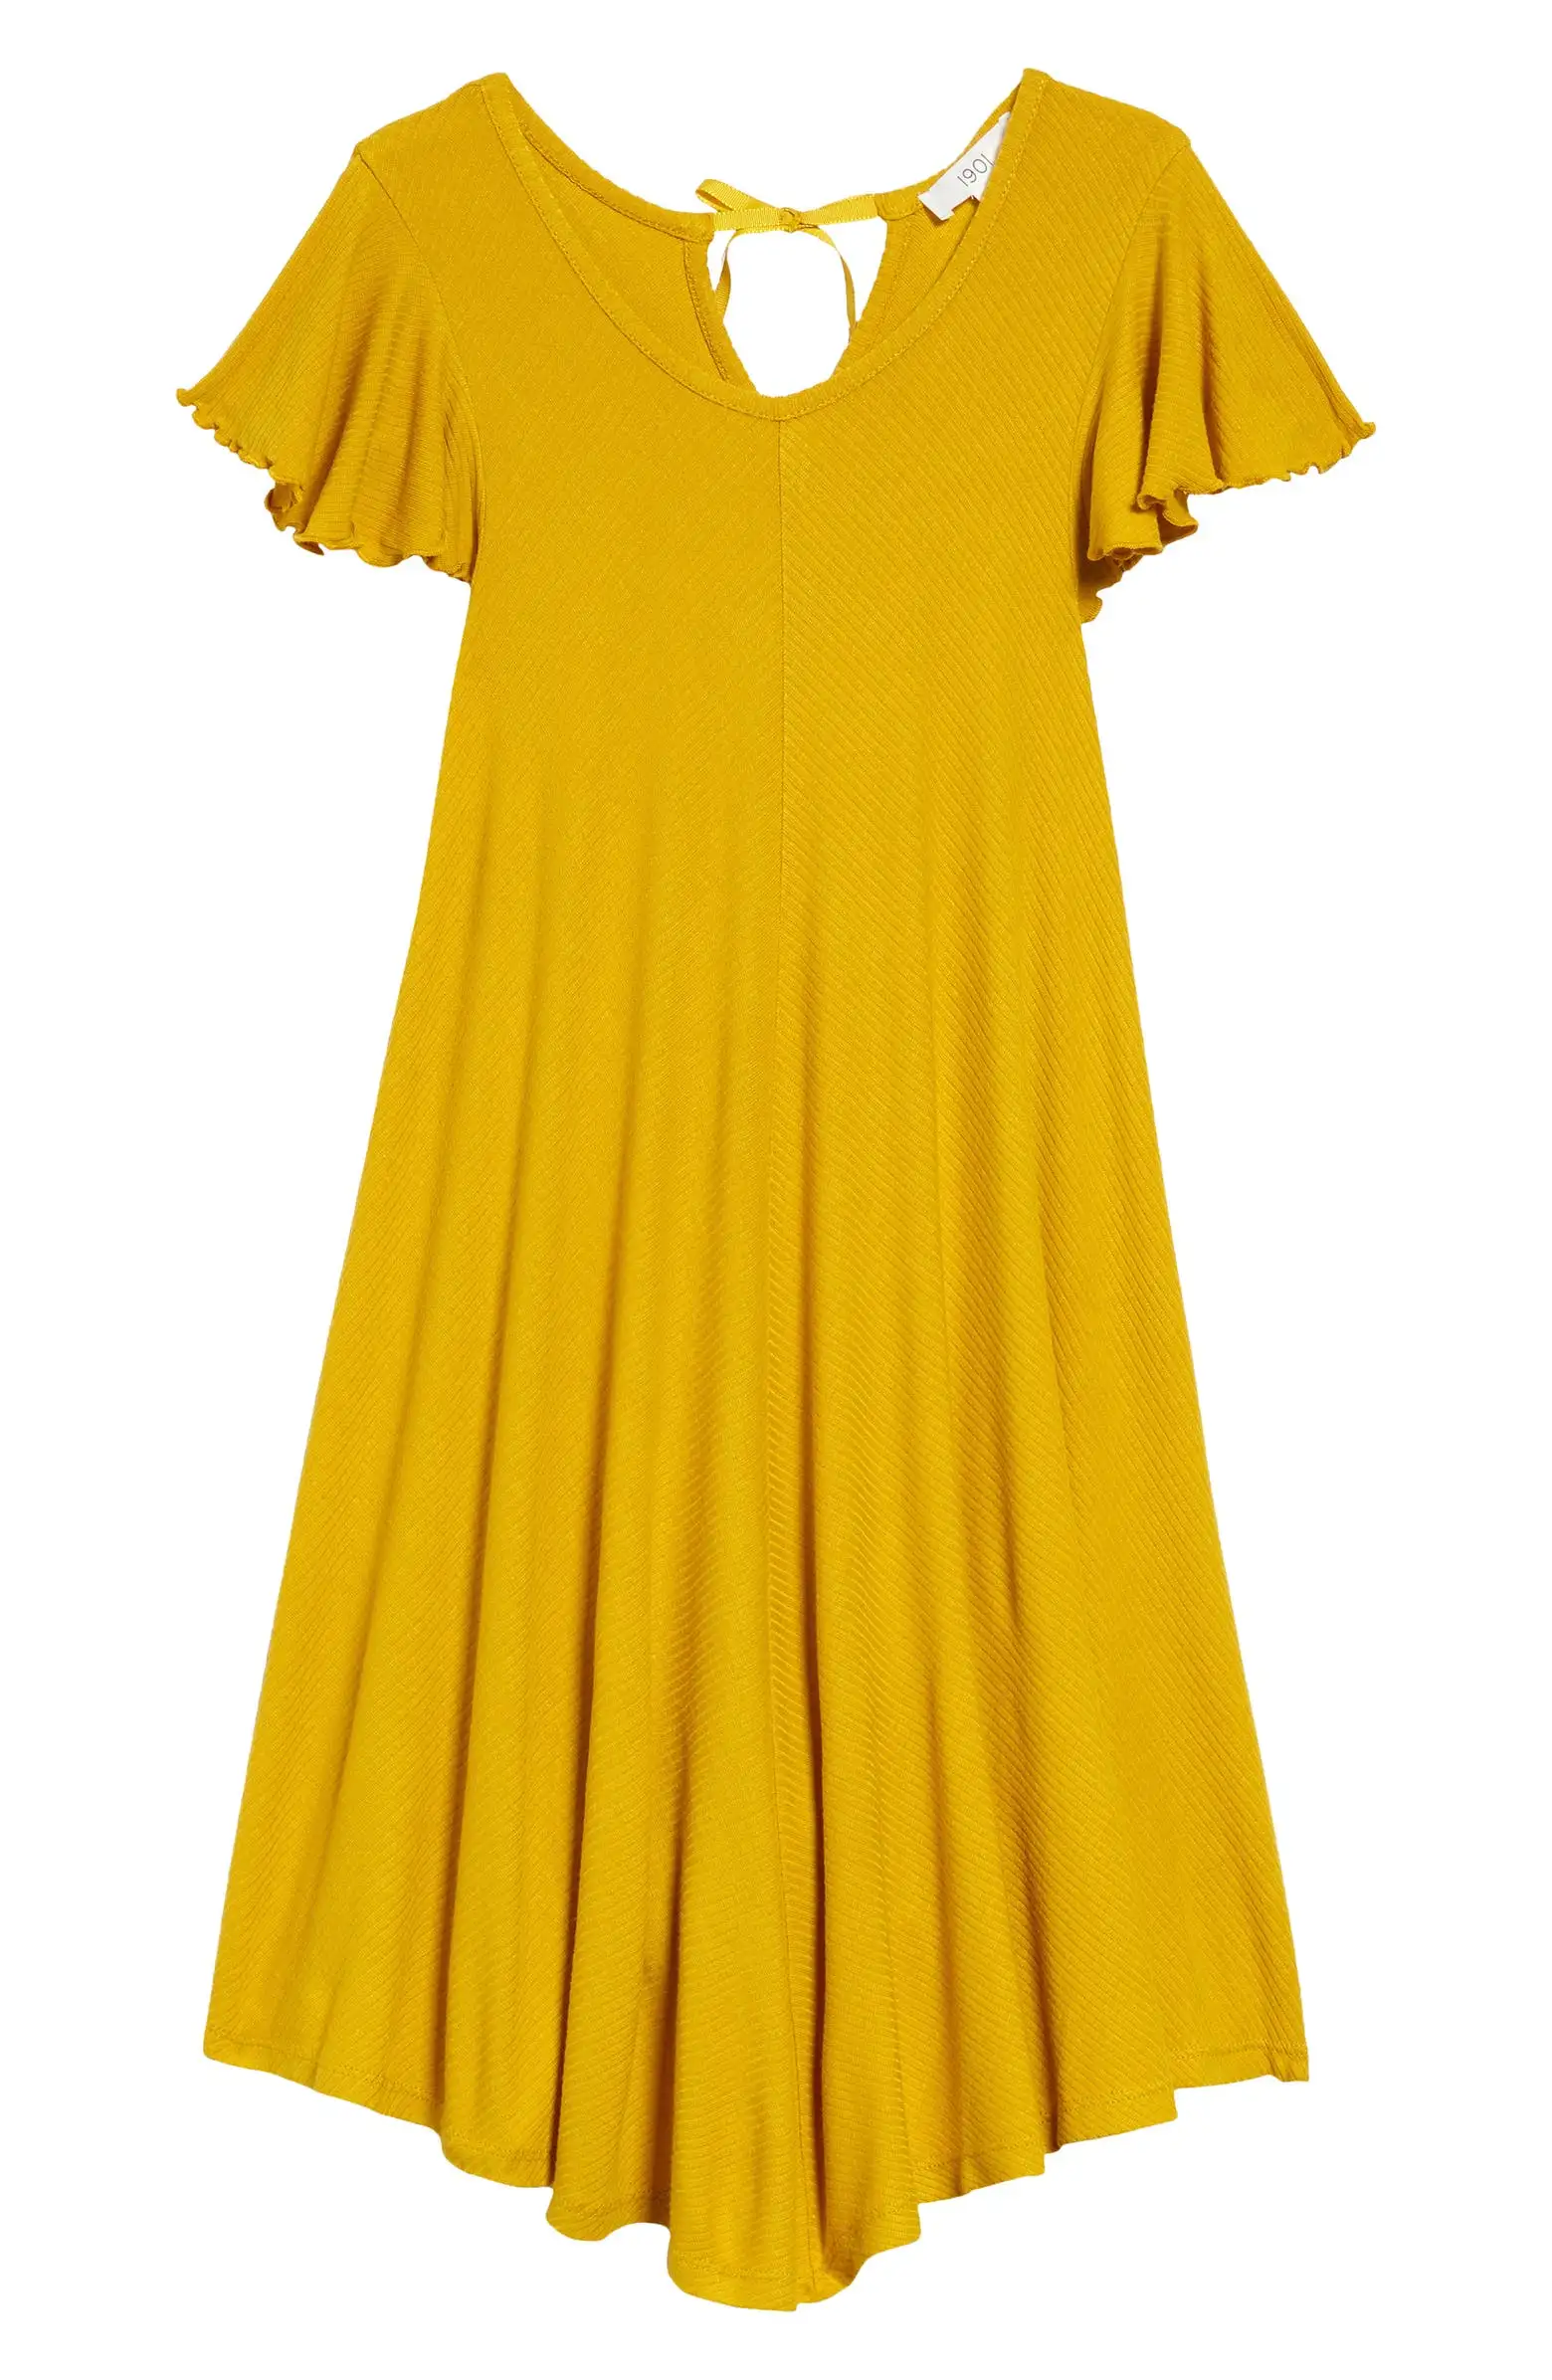 Kids' yellow flutter-sleeve dress